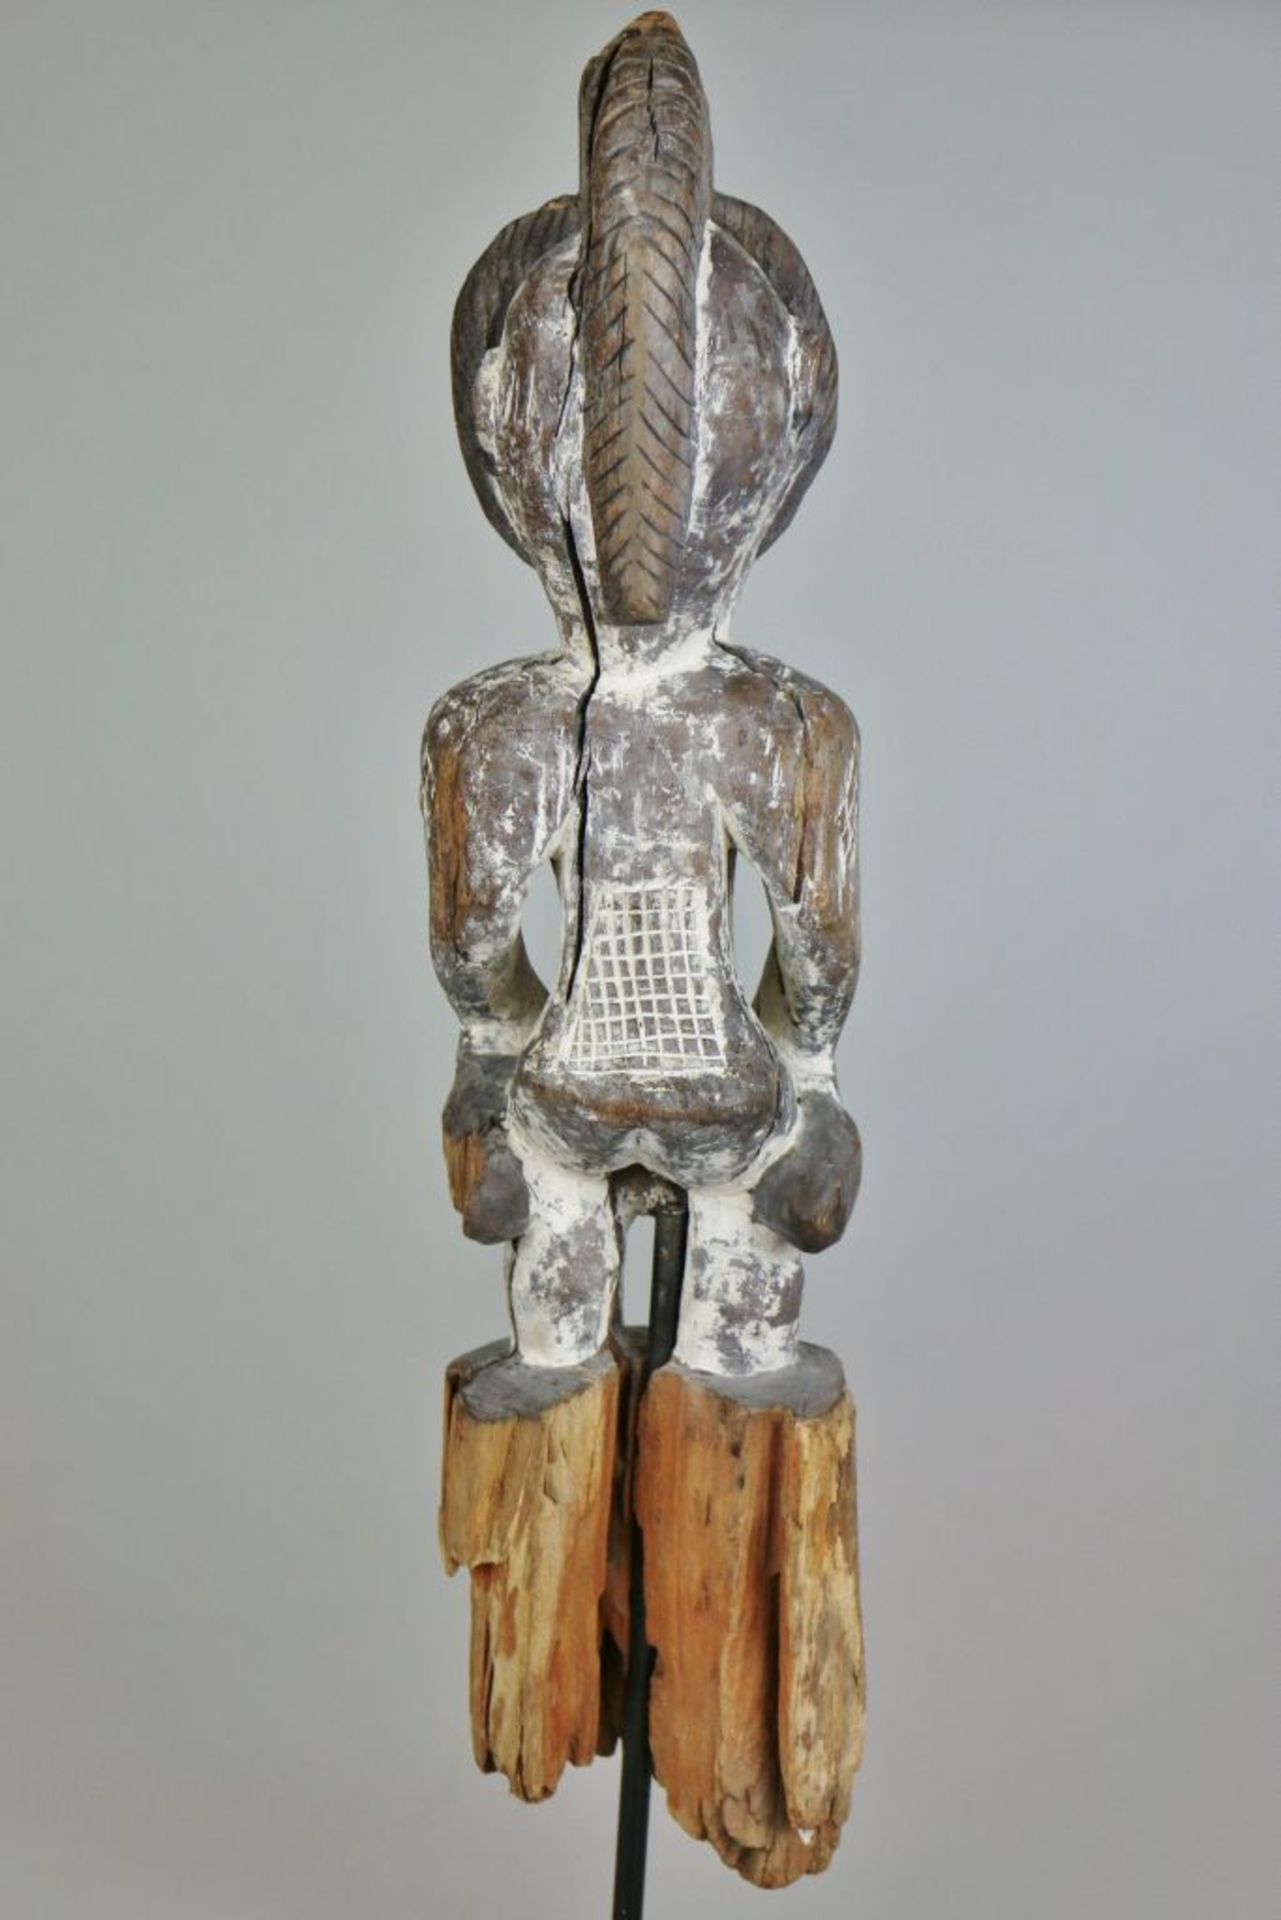 PUNU Figur, GABUN, Holz, gefasst. Wächterfigur "okuyi" der Punu, mit Resten alter Kaolinfassung. - Bild 4 aus 4